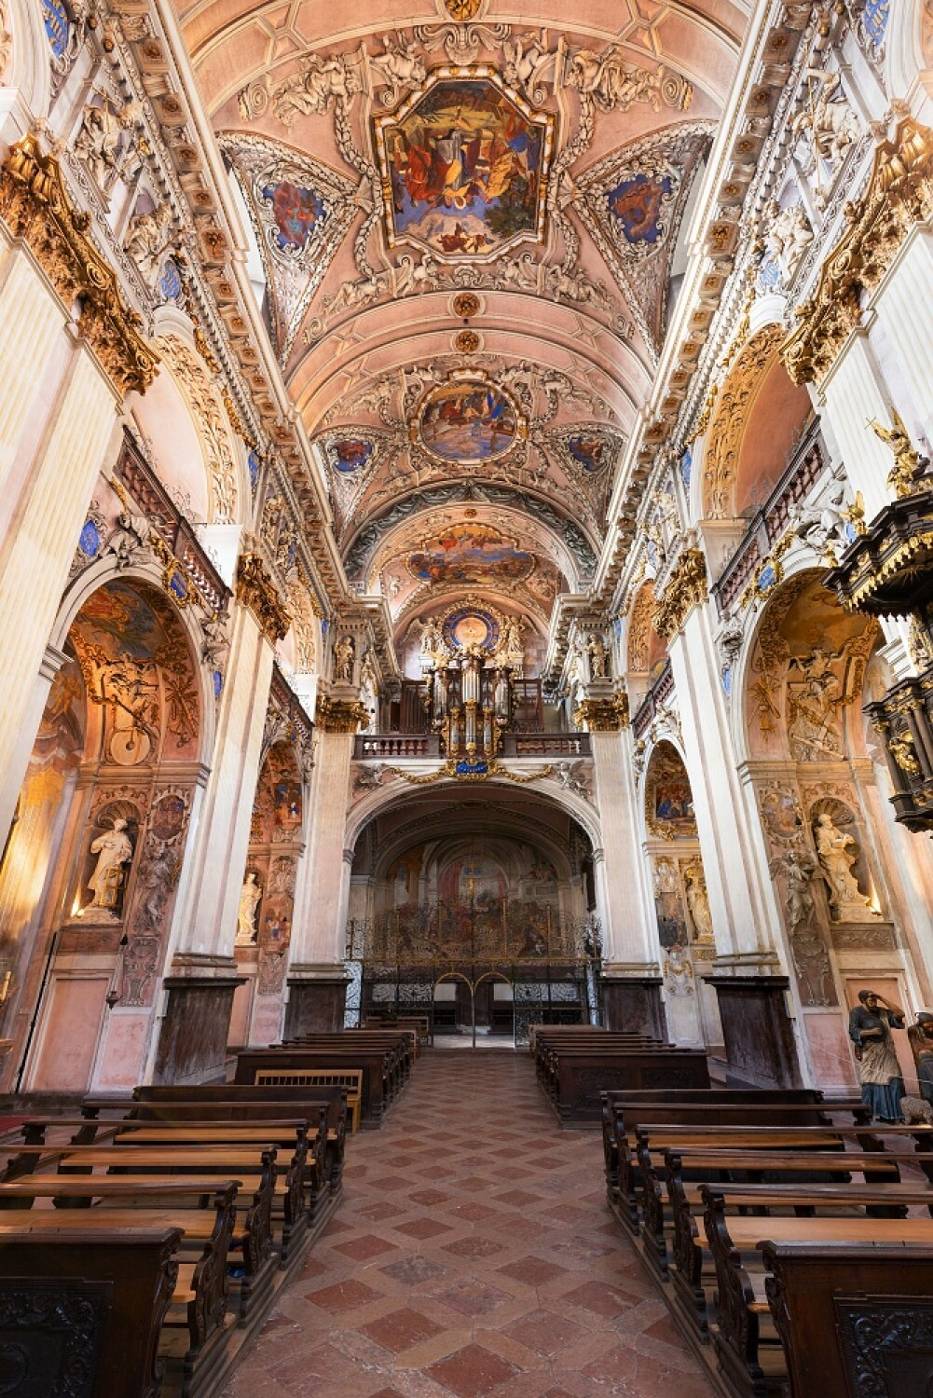 Czechy: Można zwiedzać klasztor w Broumovie po niedostępnych miejscach. Od piwnic aż po strych